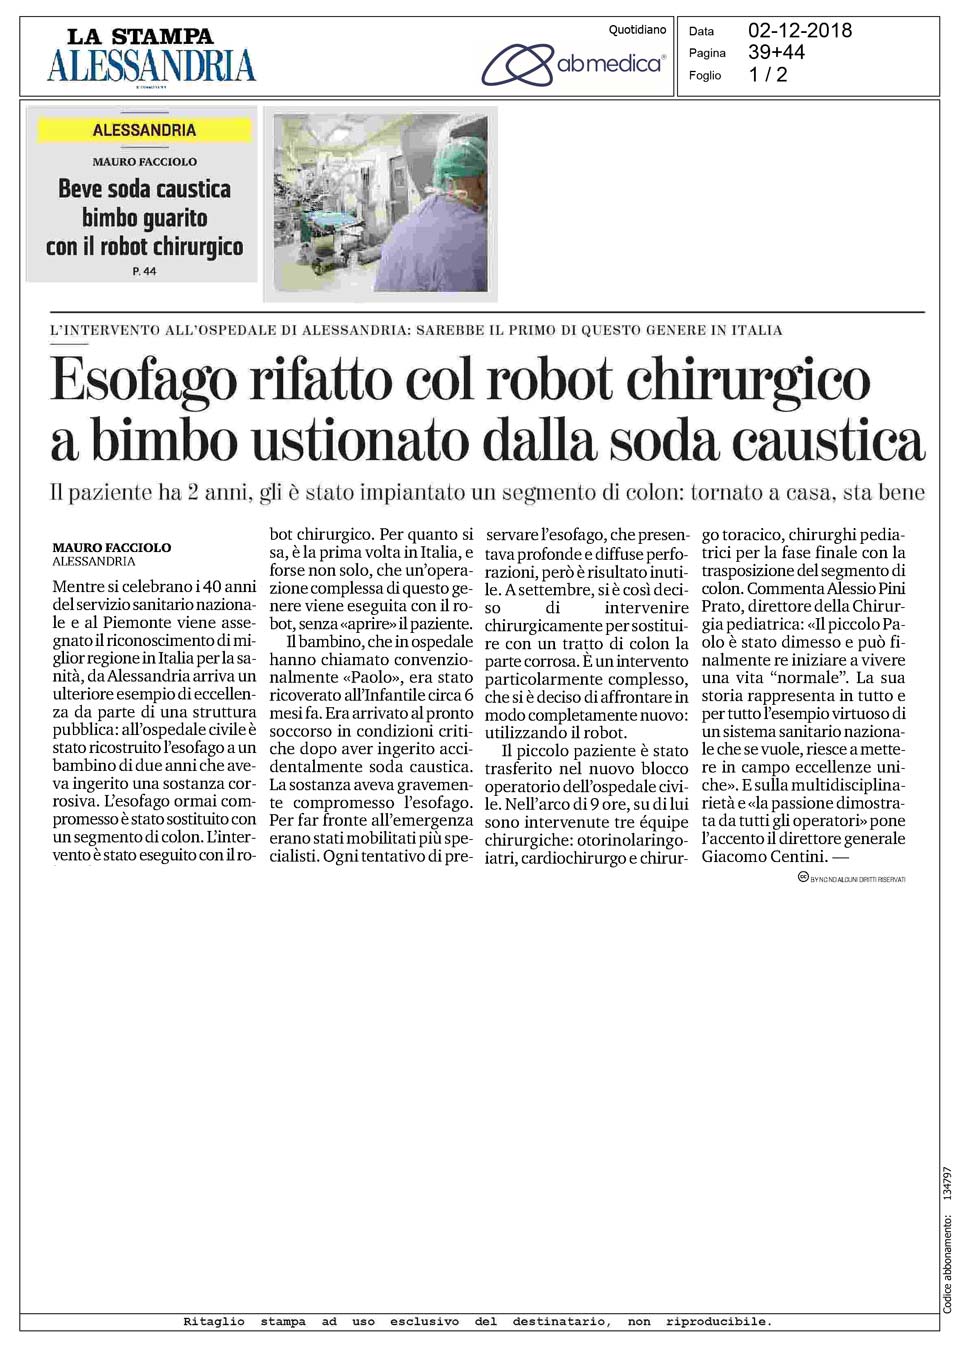 La Stampa - Esofago rifatto col robot chirurgico a bimbo ustionato dalla soda caustica